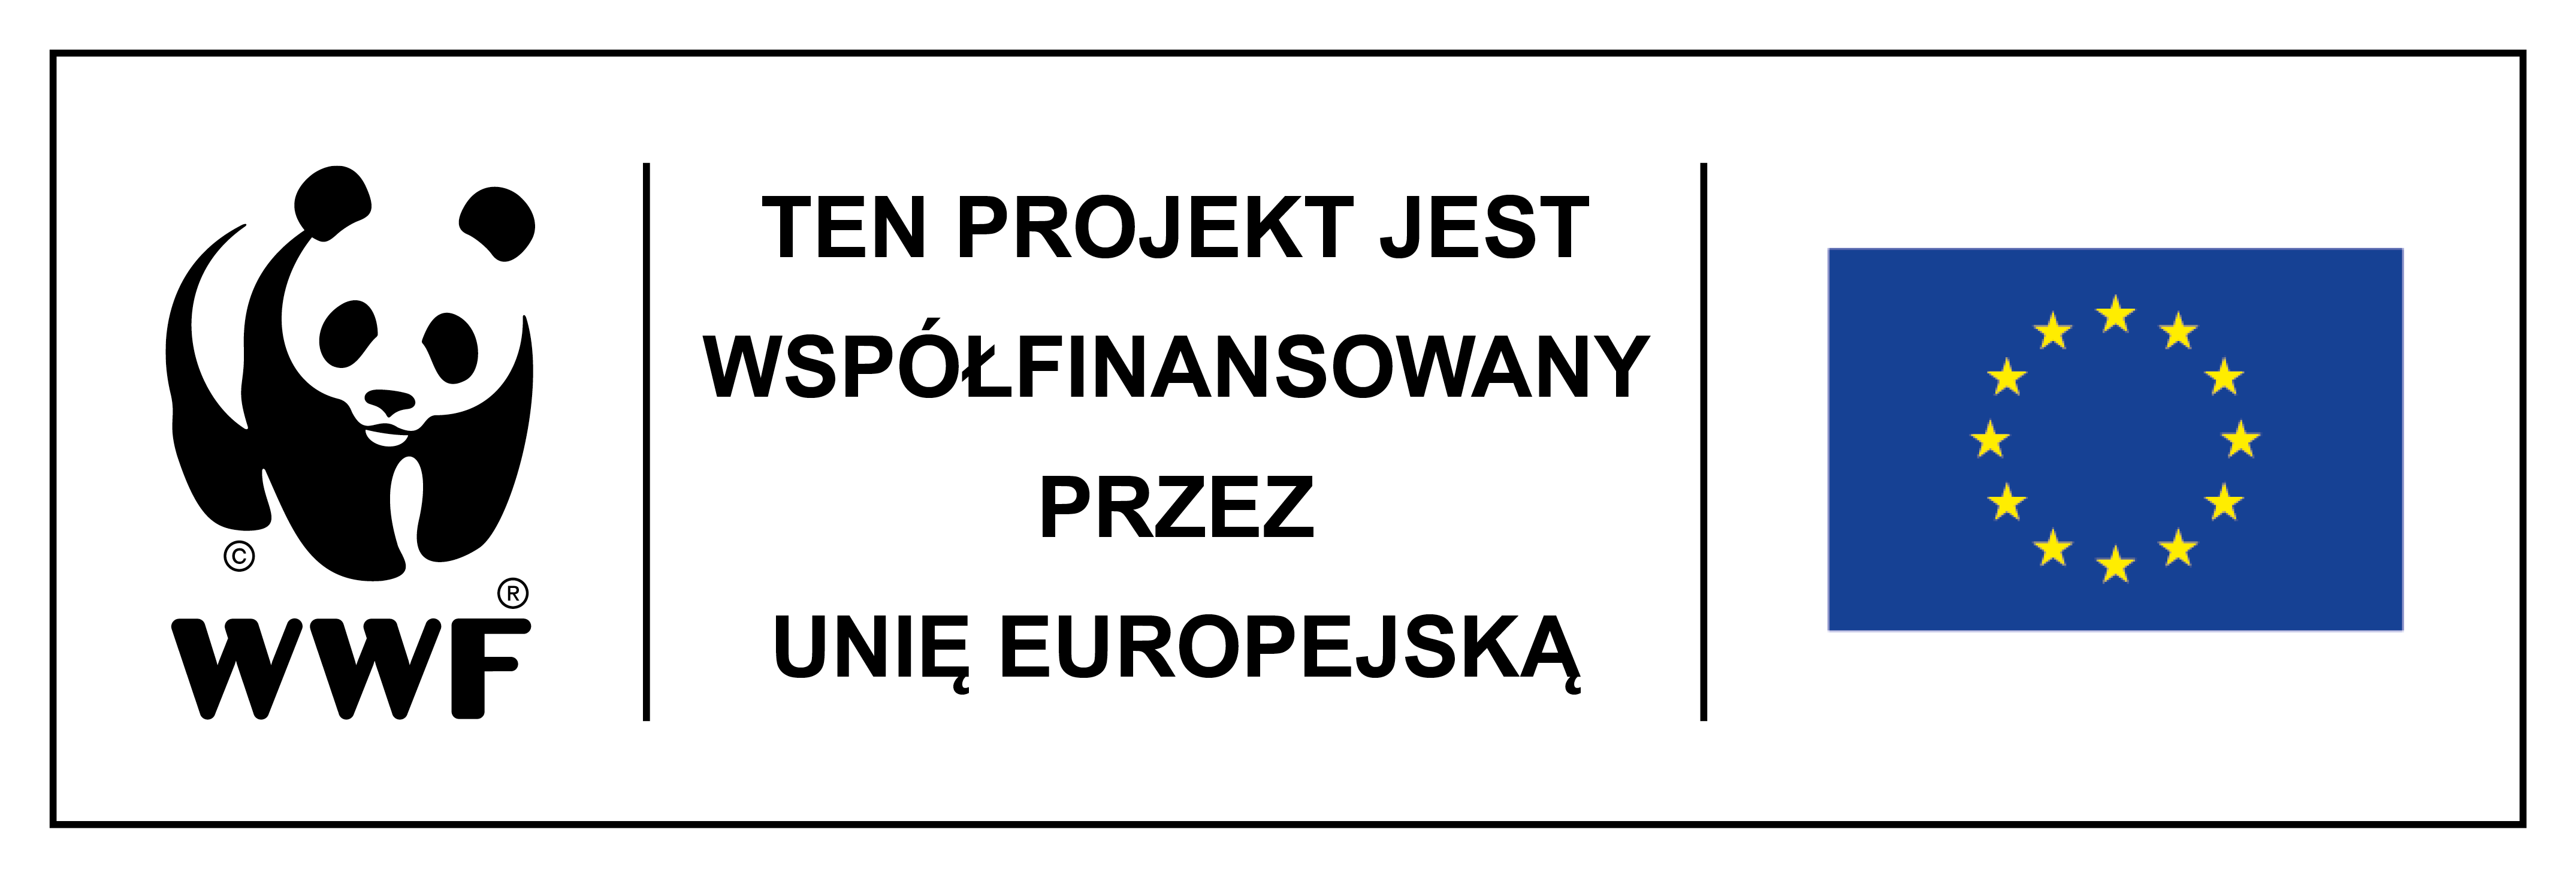 Logotypy projektu współfinansowanego przez UE